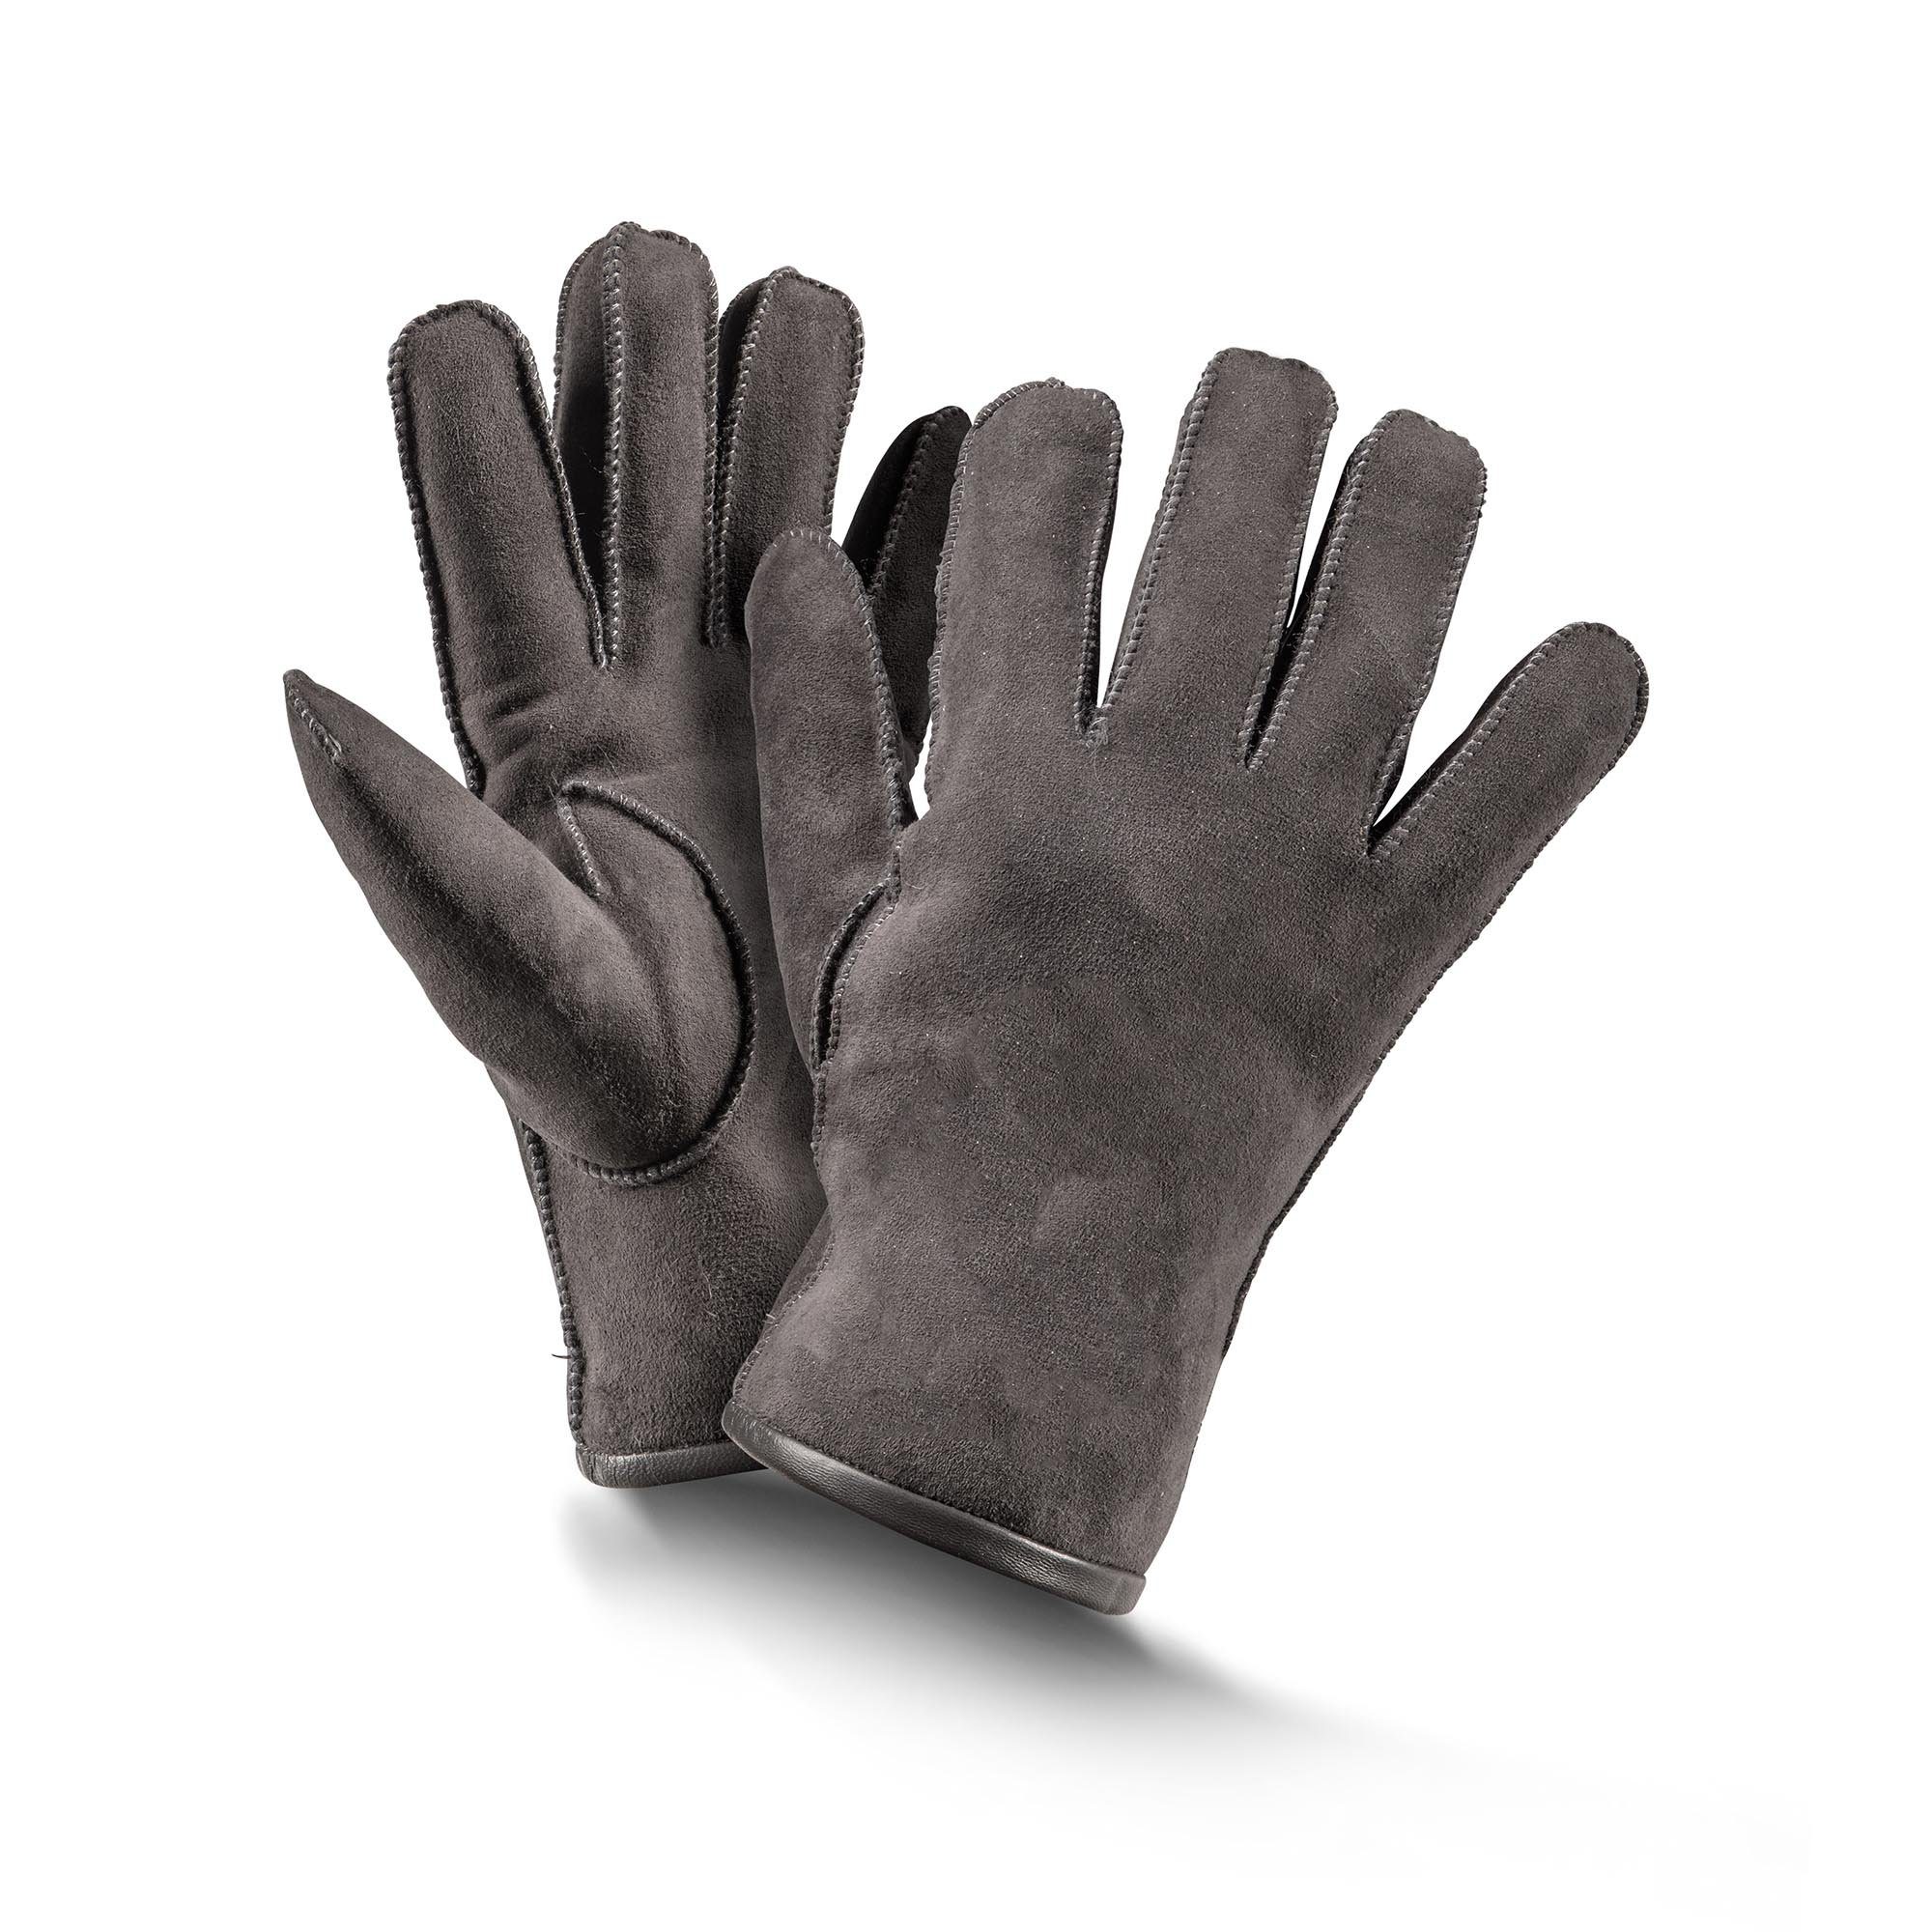 schwarz/ braun/ grau Baumwollhandschuhe 6-10 Basic Fellhof Handschuhe Gr Fingerhandschuhe